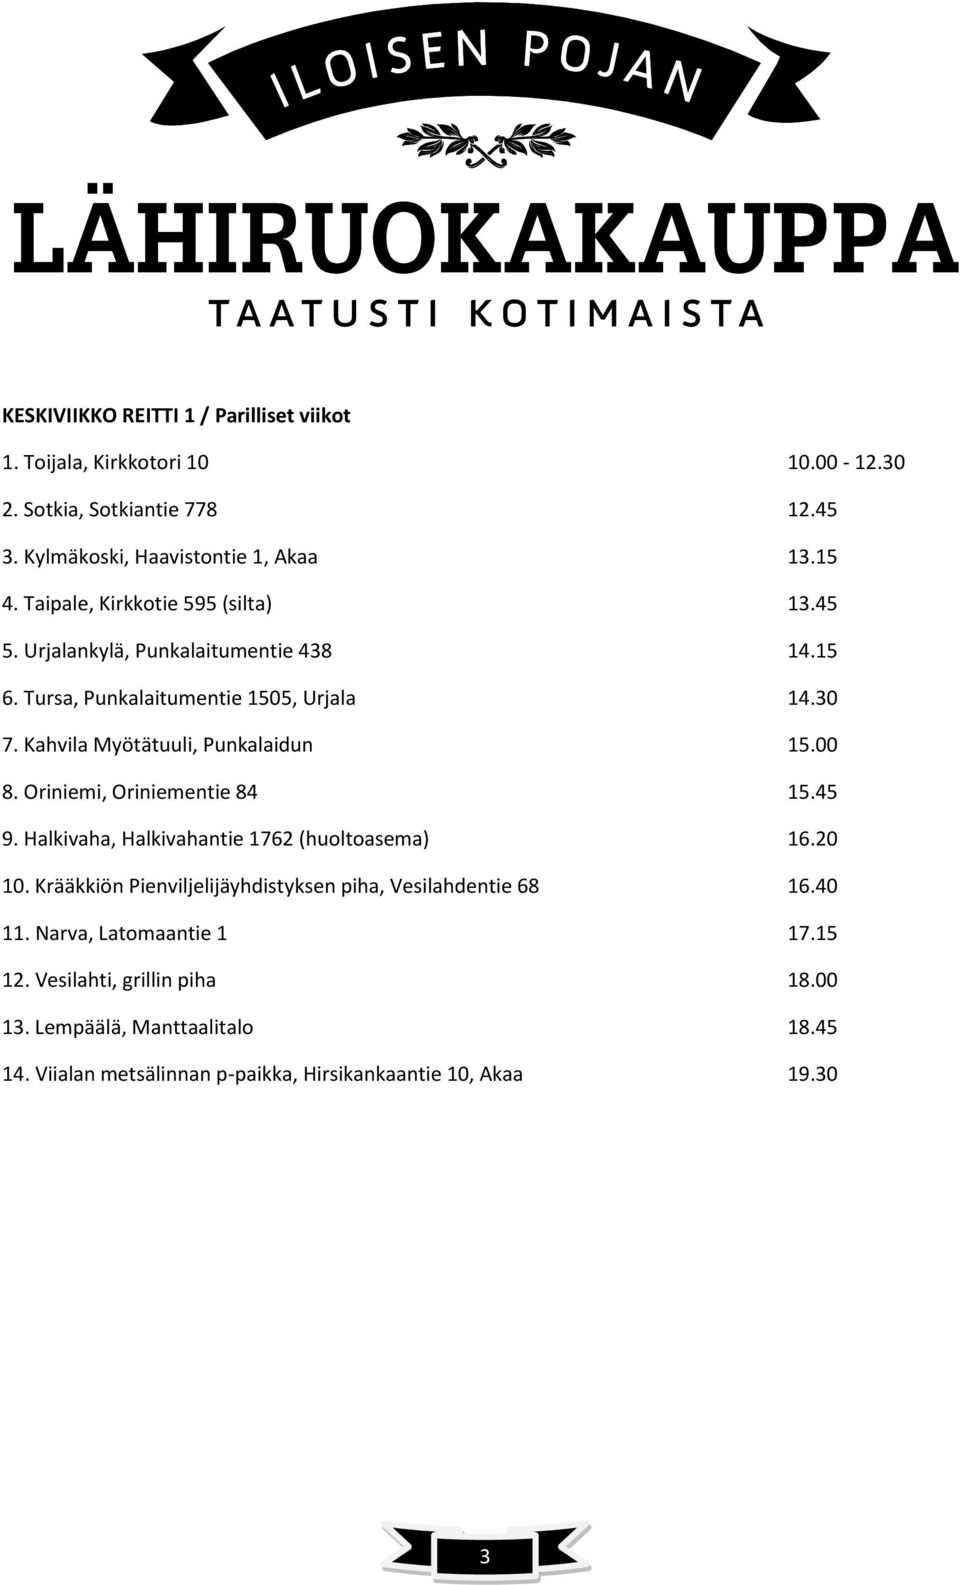 Kahvila Myötätuuli, Punkalaidun 15.00 8. Oriniemi, Oriniementie 84 15.45 9. Halkivaha, Halkivahantie 1762 (huoltoasema) 16.20 10.